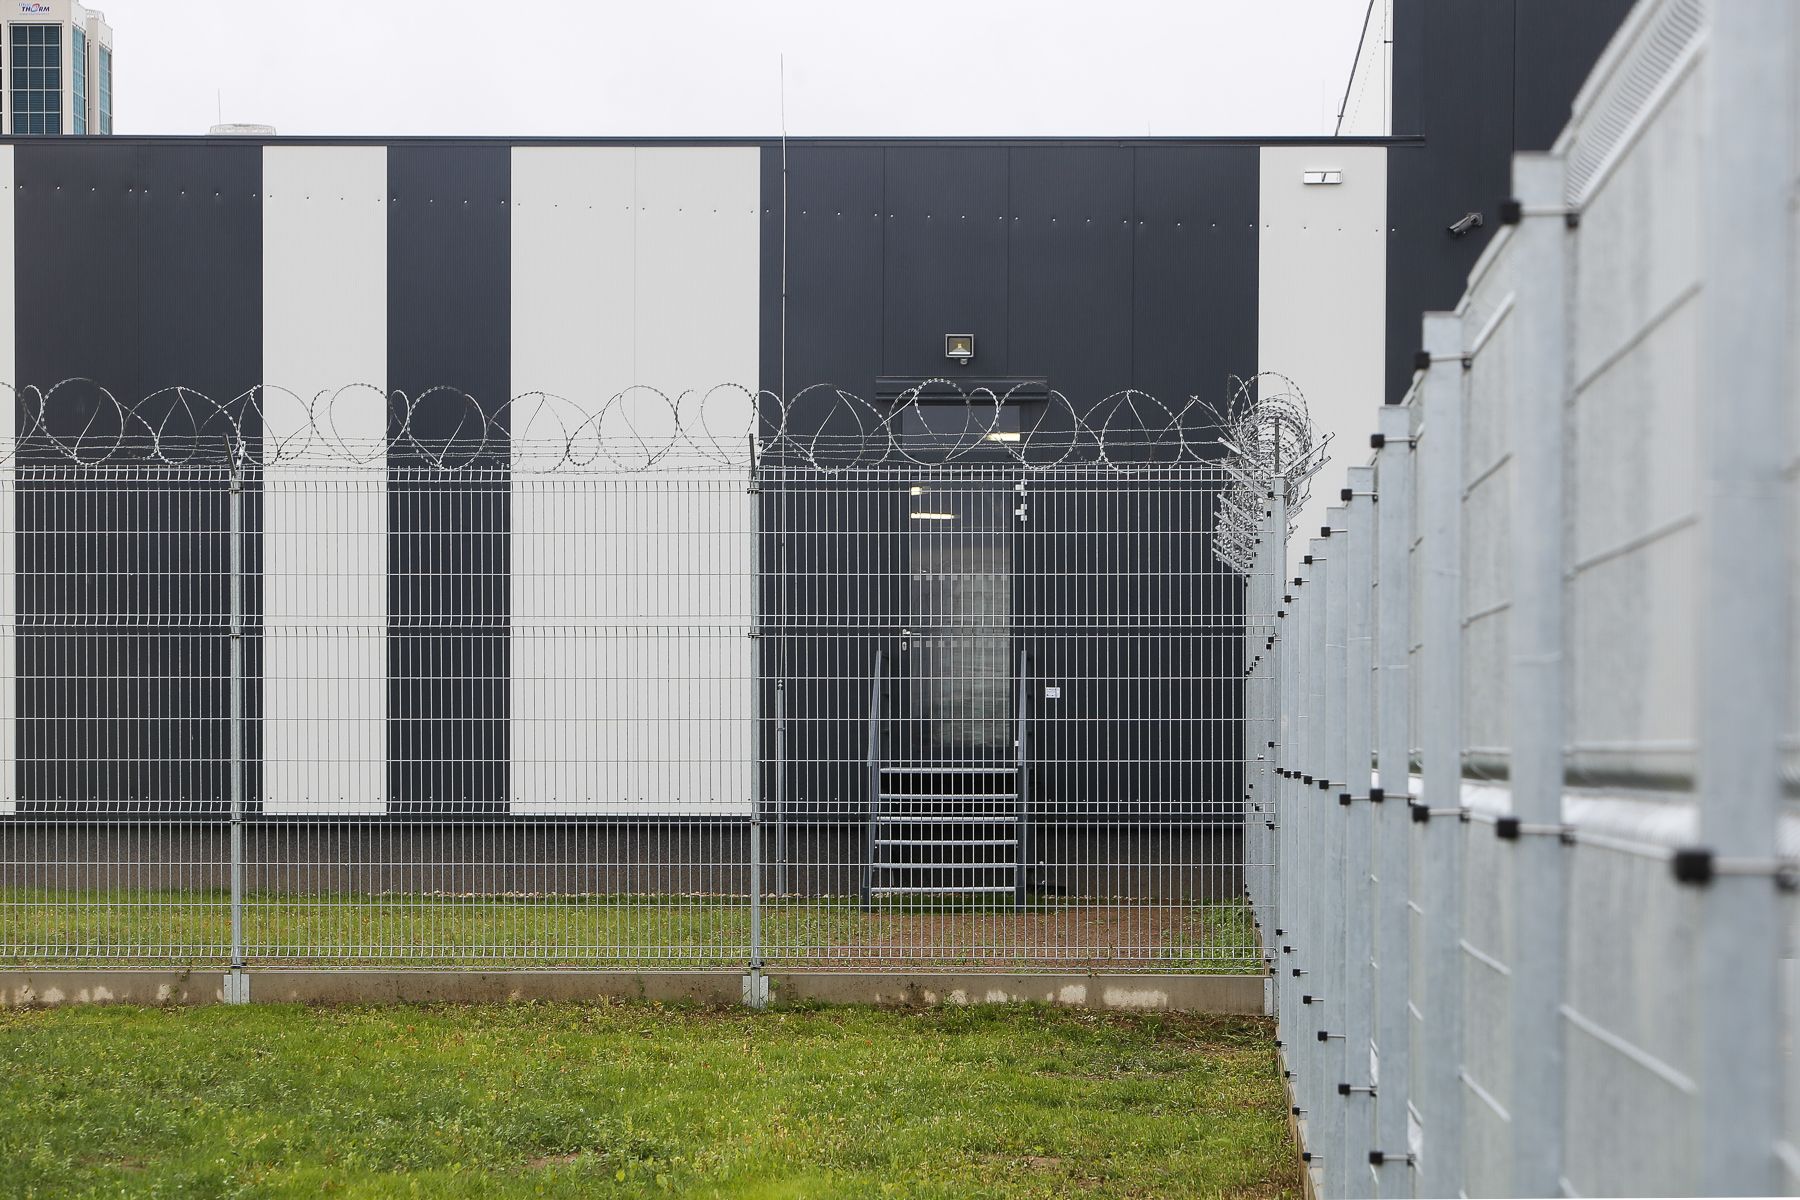 Otevření výrobní haly Levimo firmy Lion Products u věznice ve Světlé nad Sázavou